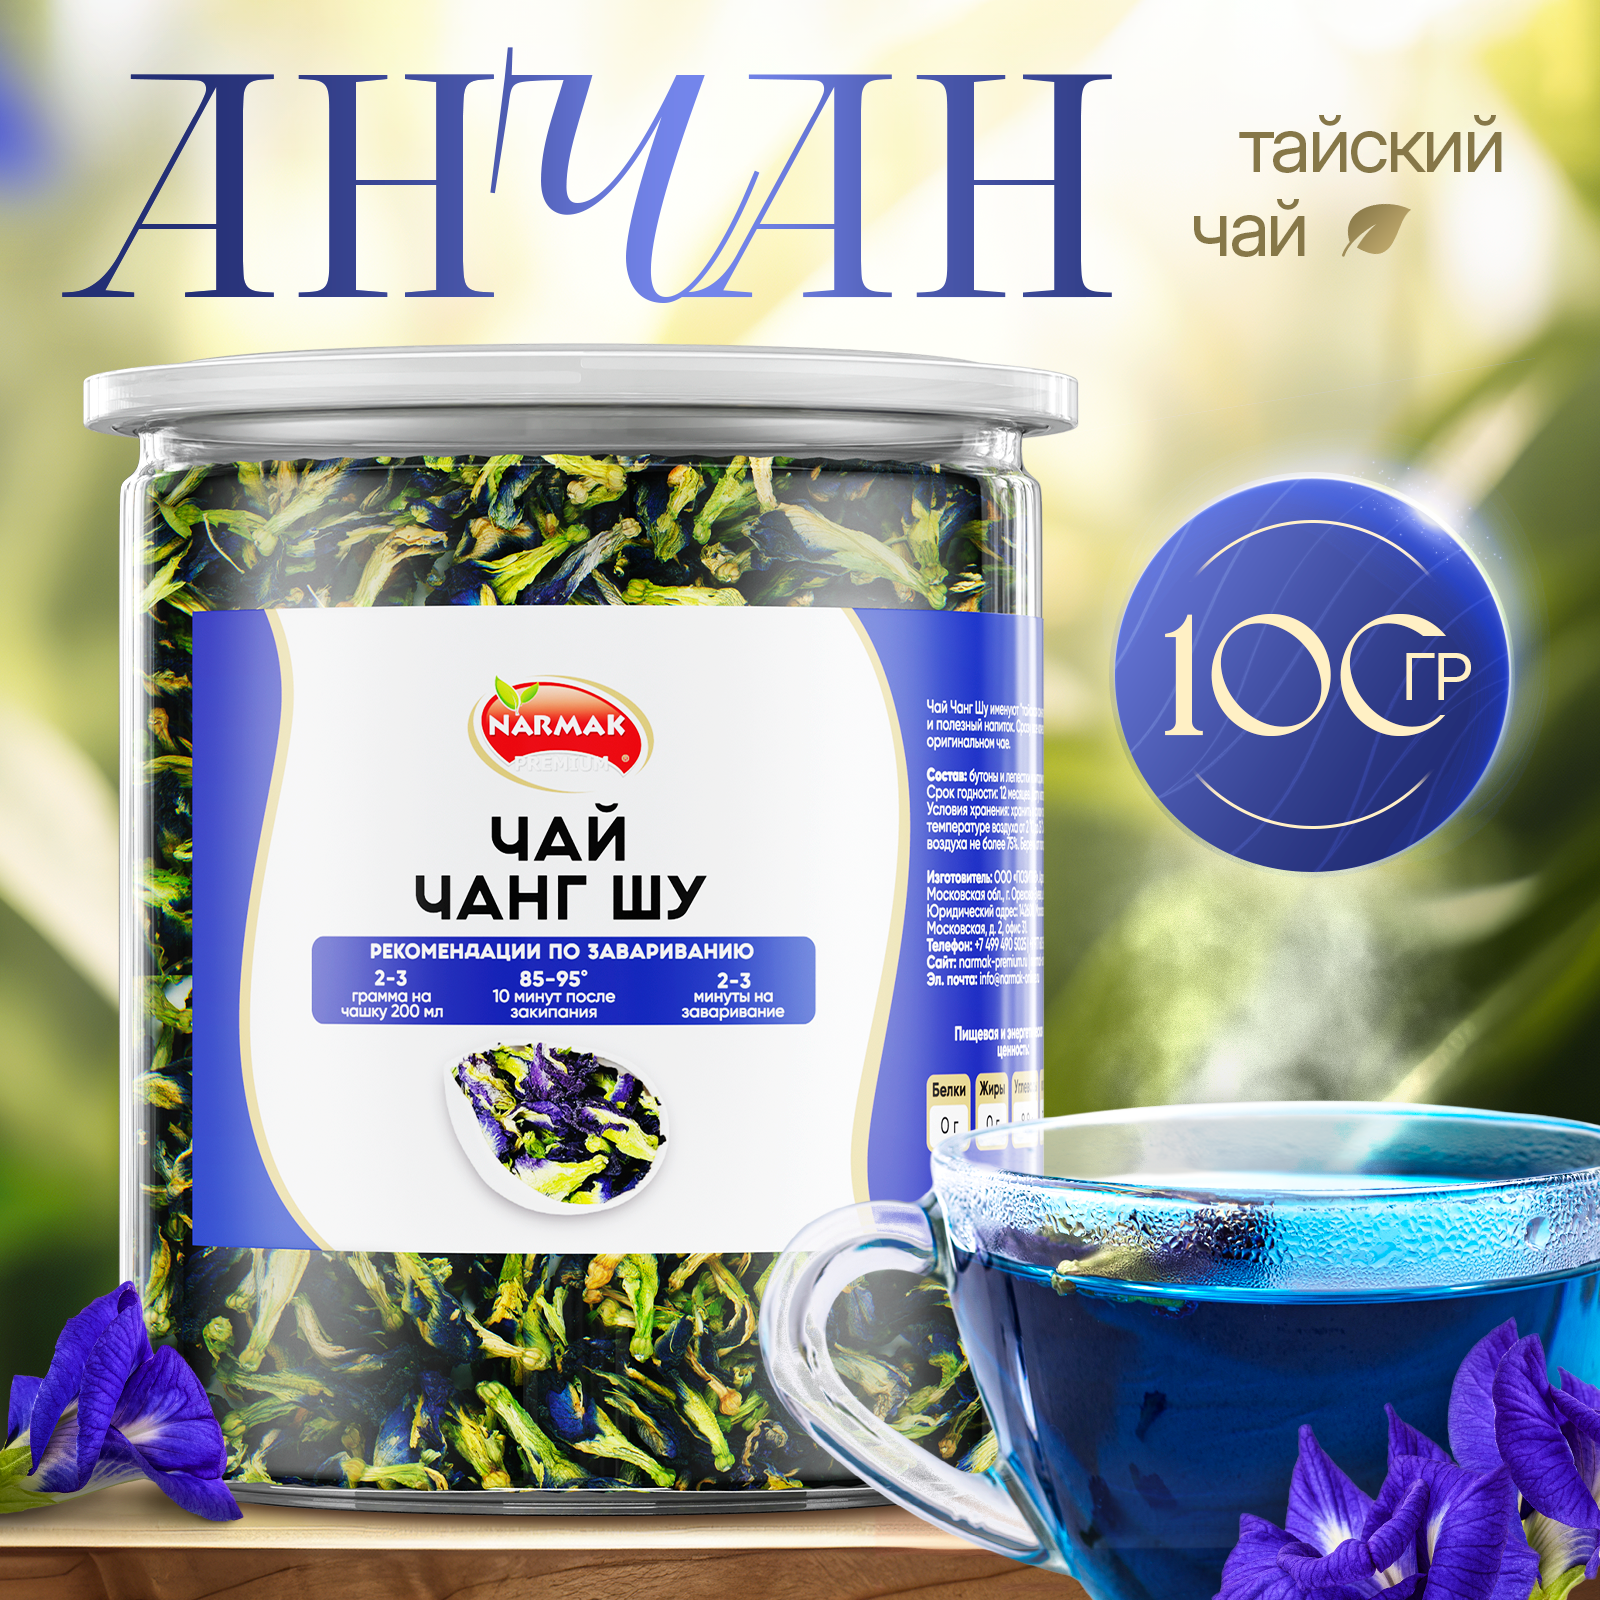 Чай Чанг Шу тайский синий 100 гр Narmak